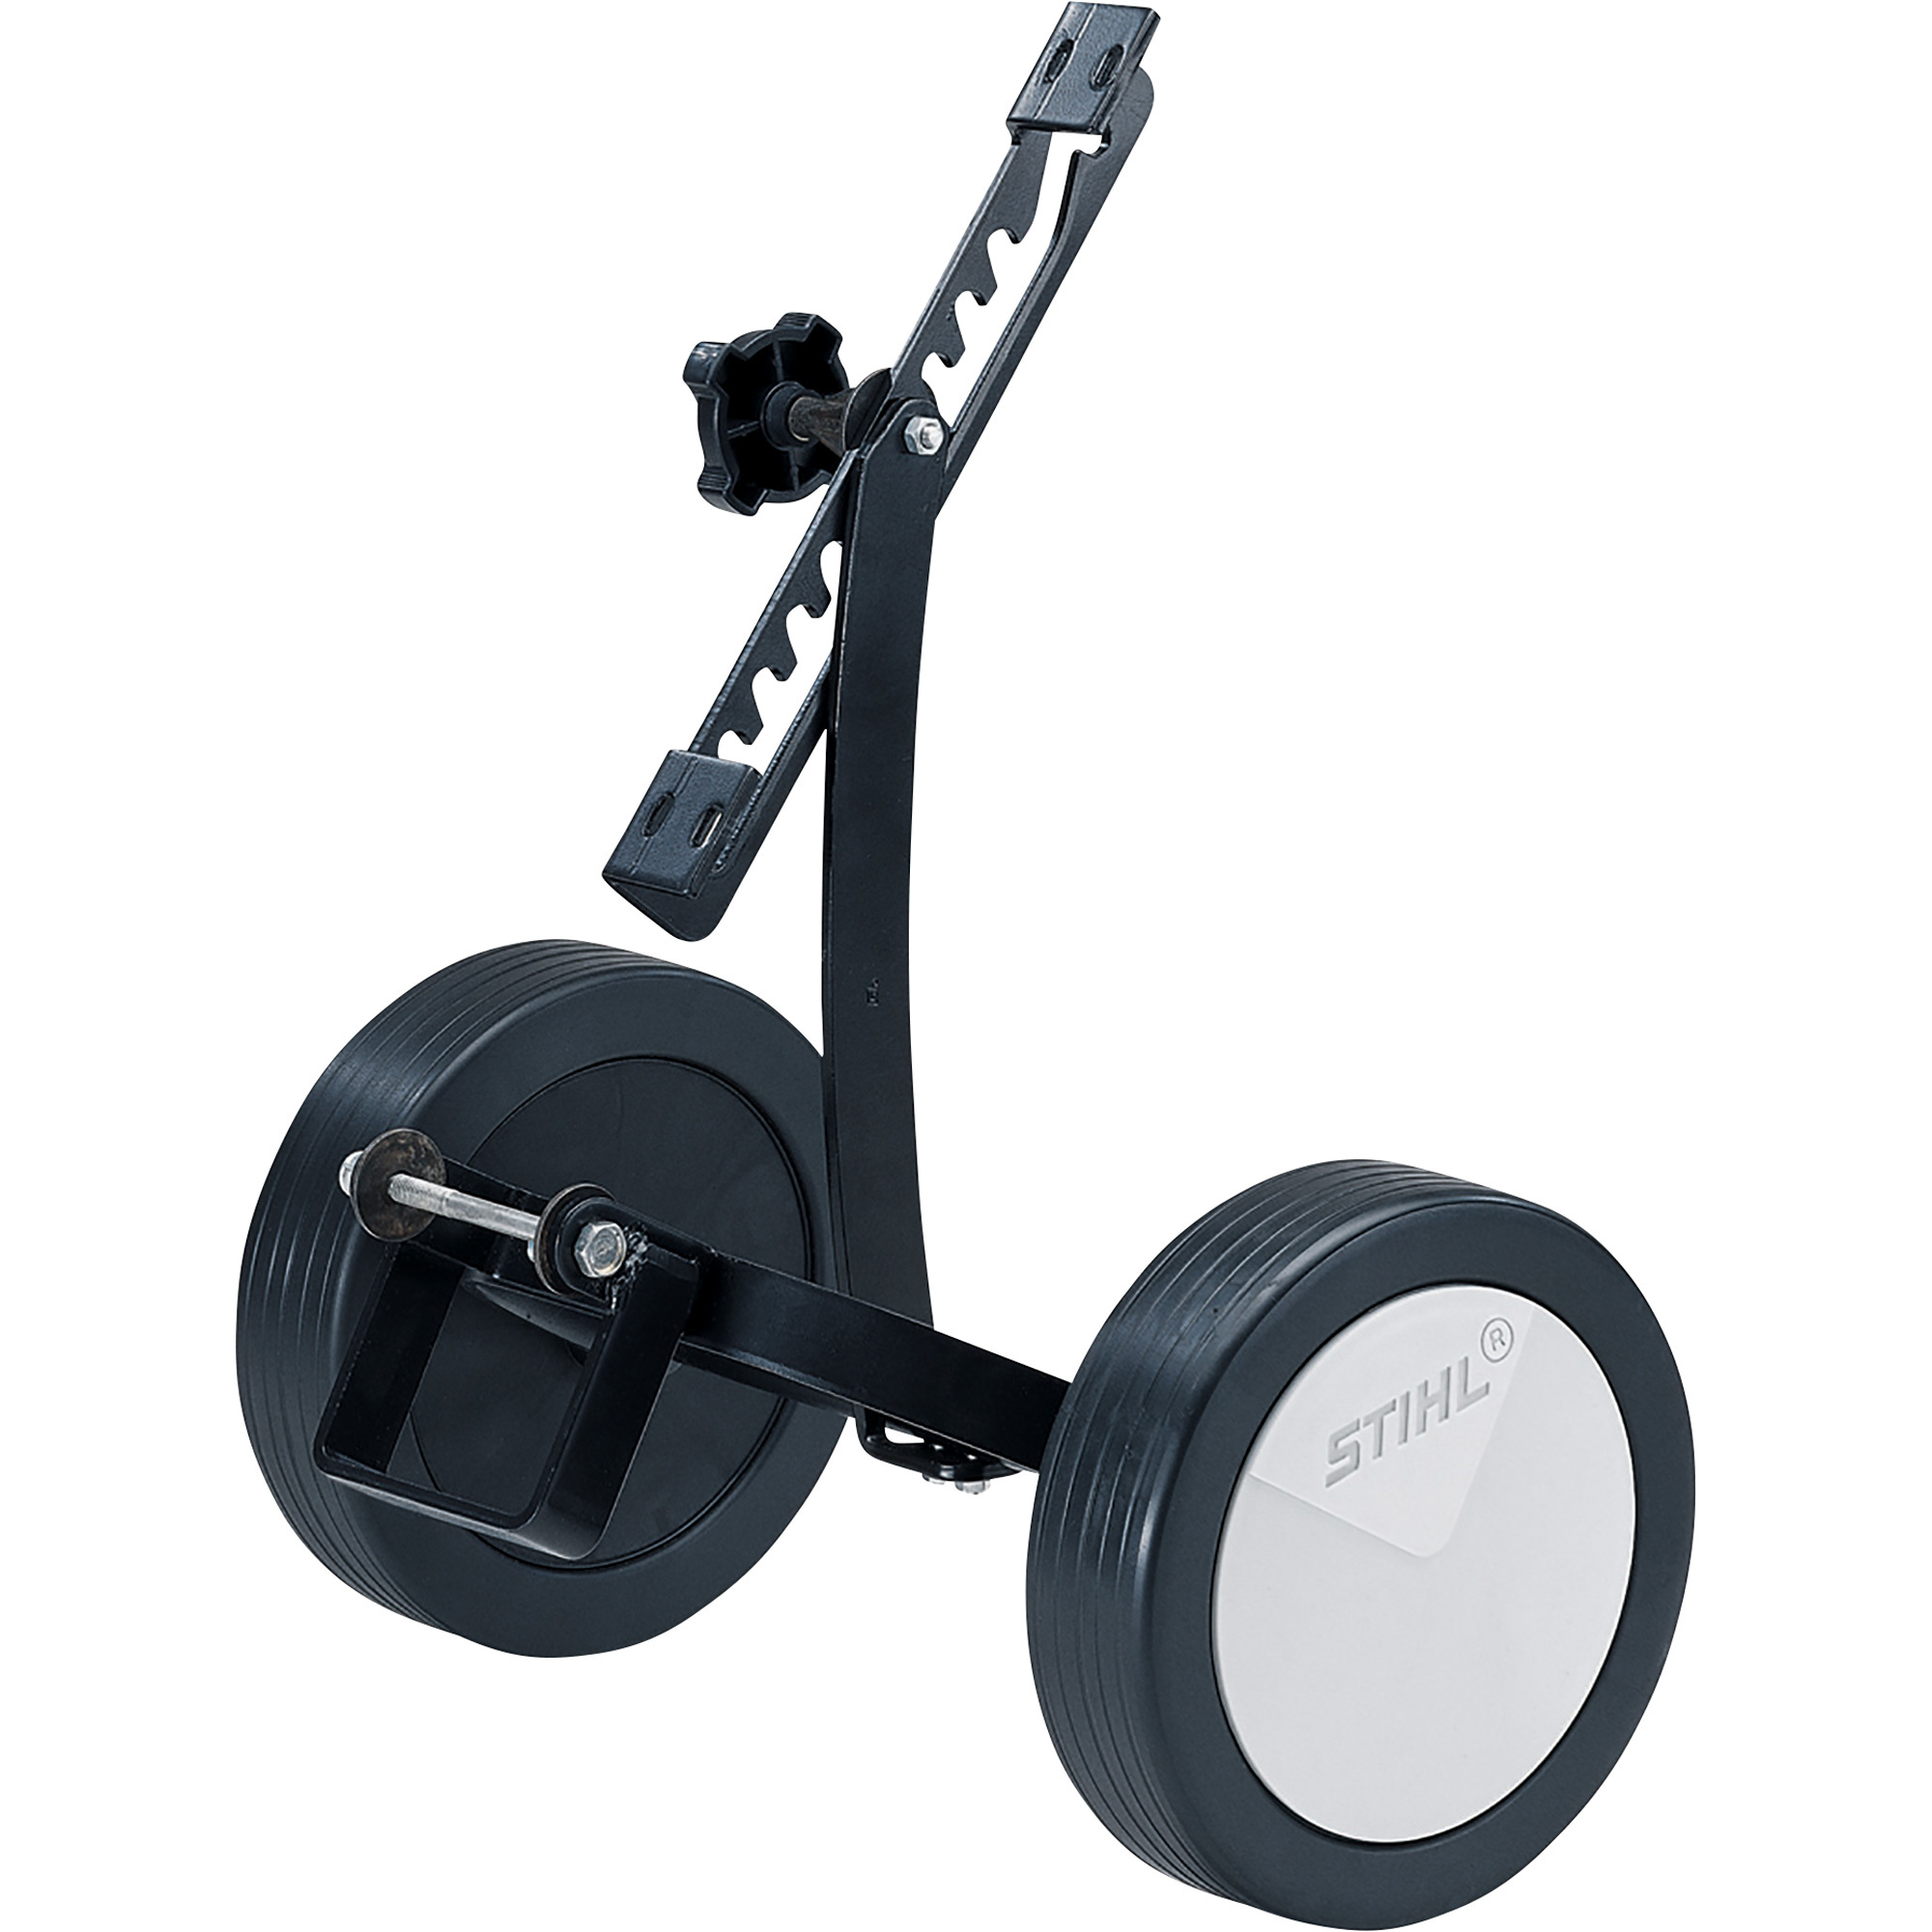 Stihl Yard Boss MM Wheel Kit Attachment â Model 4601 007 1008